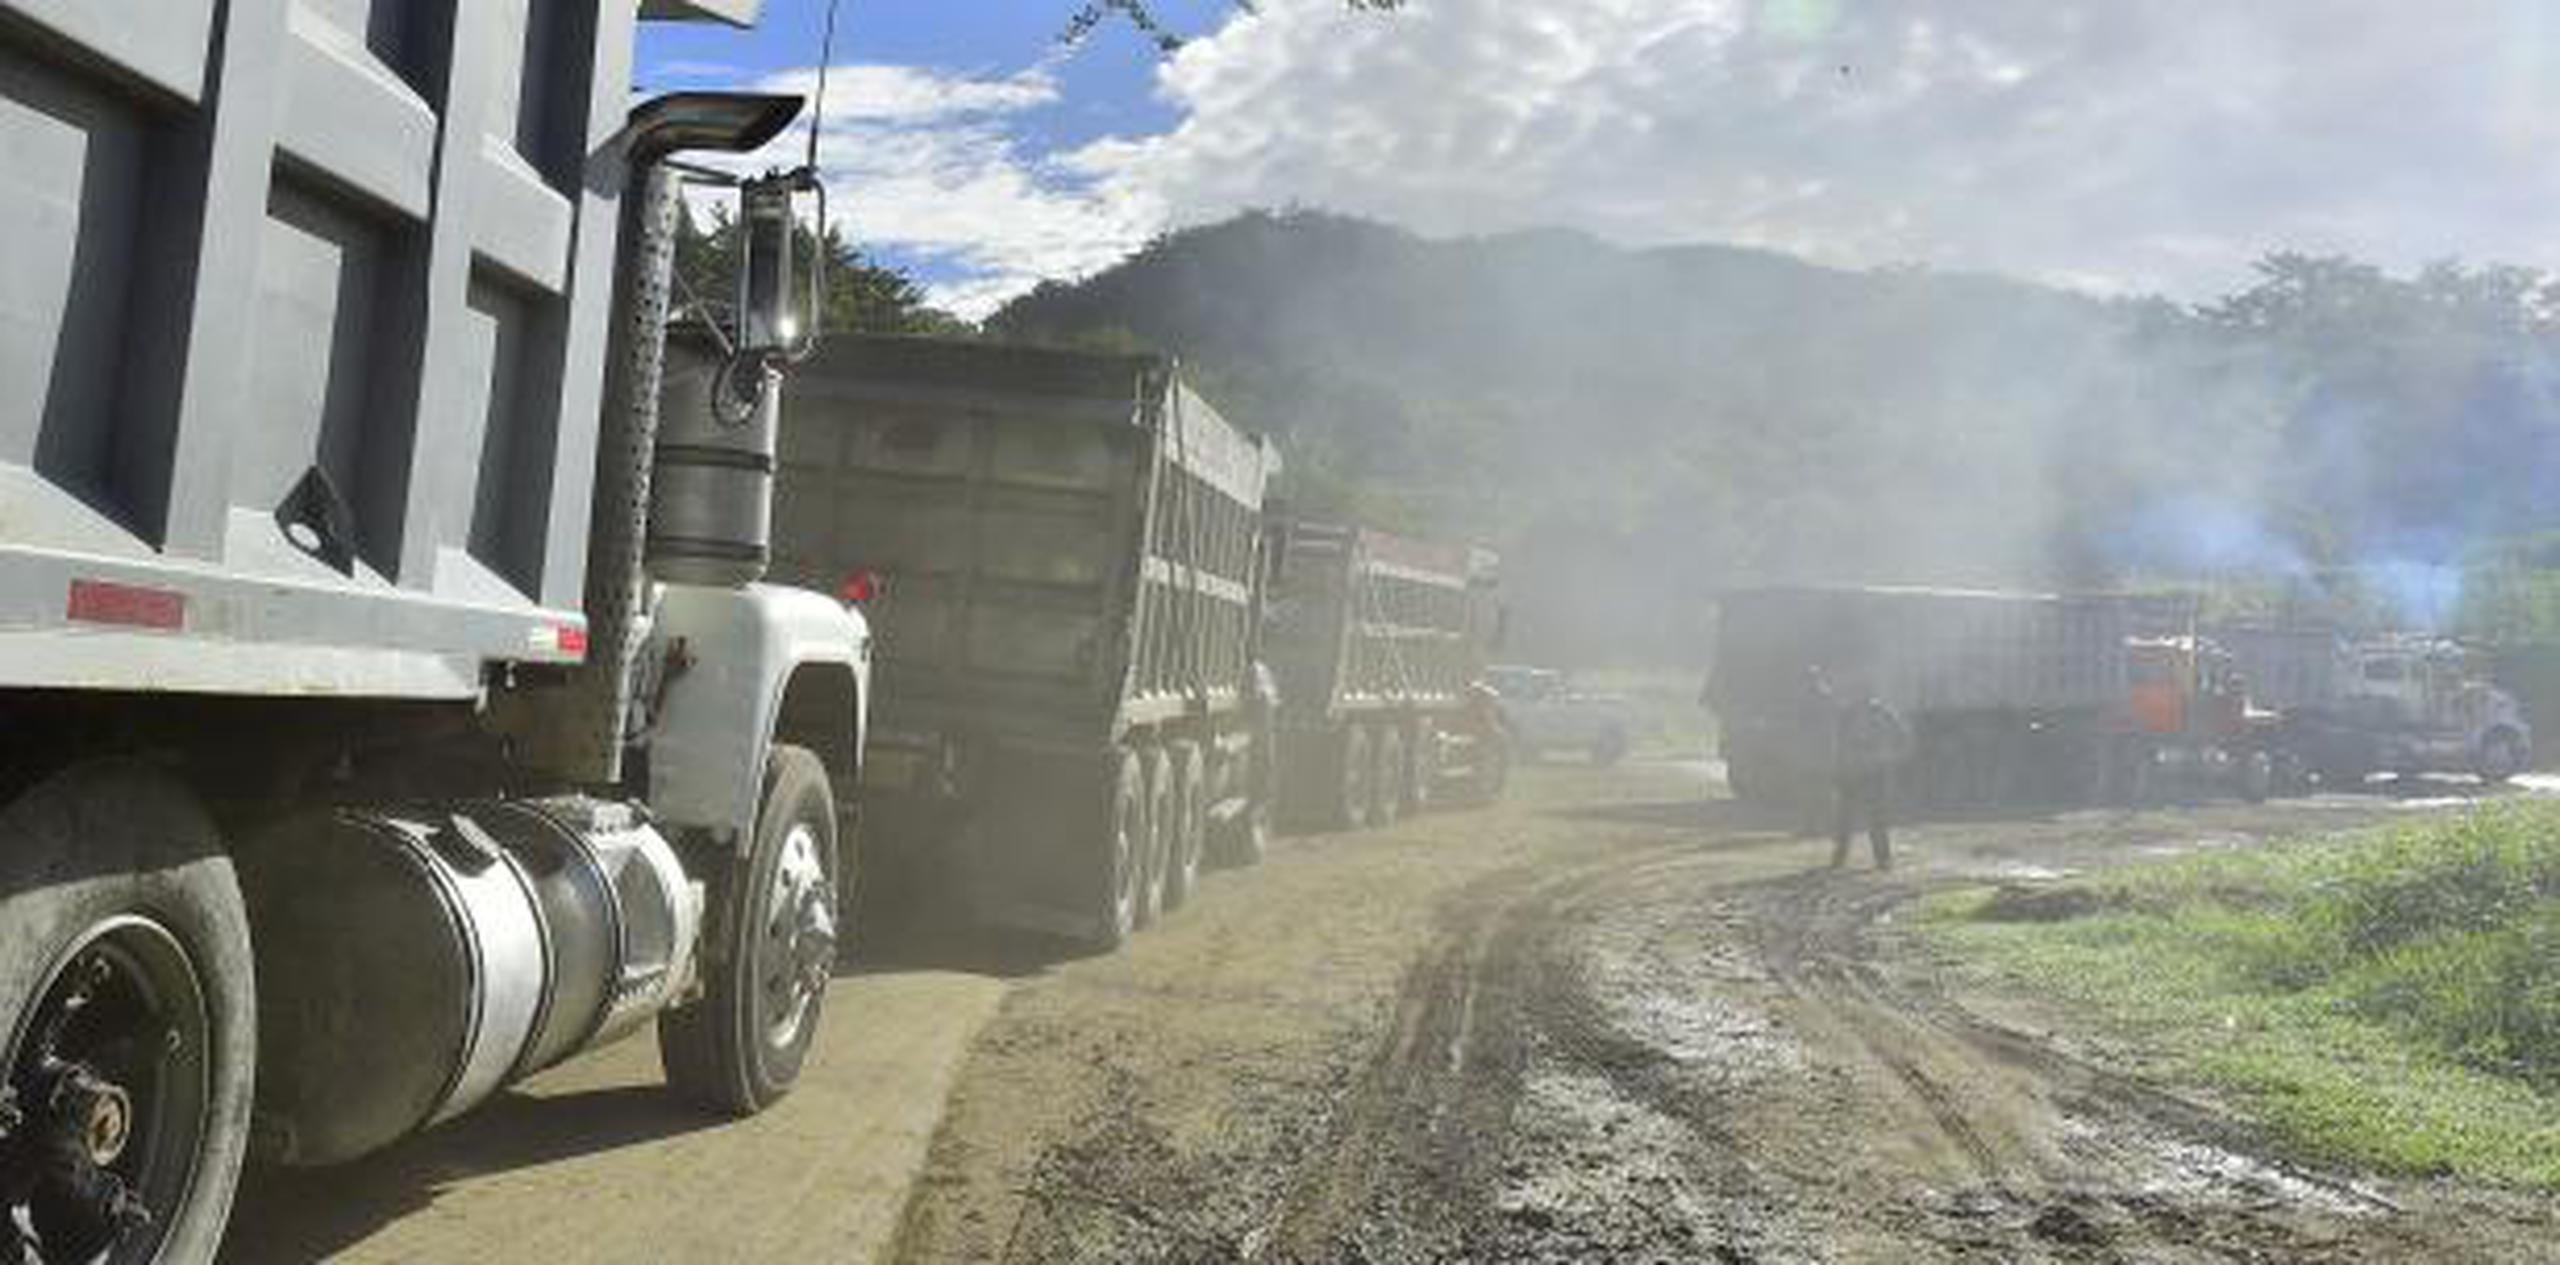 El depósito de cenizas en el relleno sanitario de Peñuelas ha generado constantes protestas por parte de las comunidades vecinas y ambientalistas que se han agudizado en las pasadas semanas con los manifestantes bloqueando la entrada de camiones al vertedero.